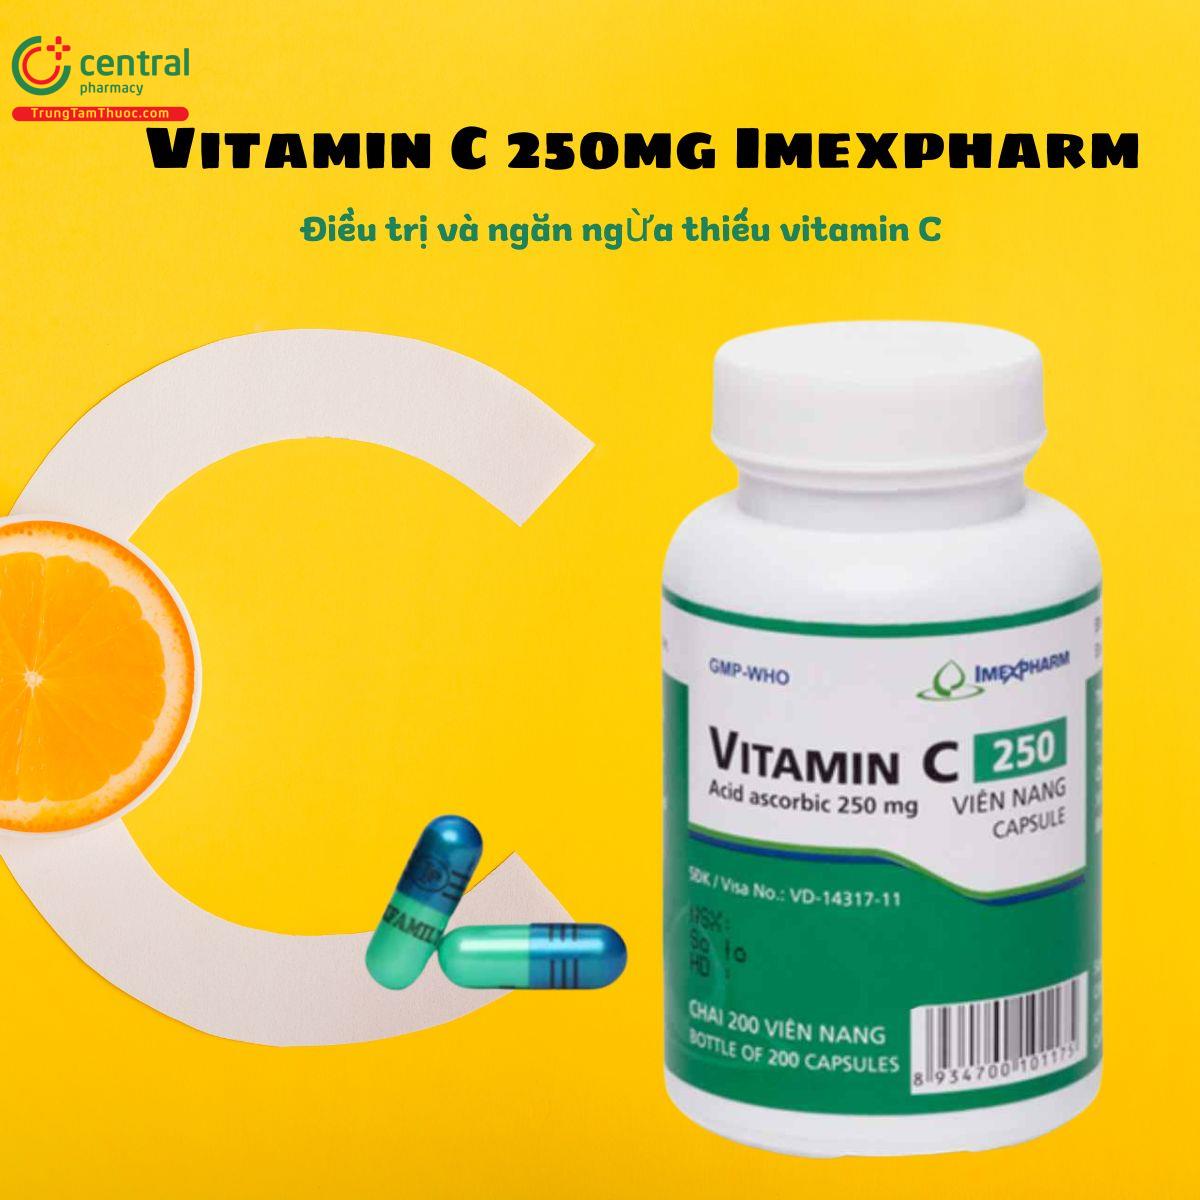 Thuốc Vitamin C 250mg Imexpharm điều trị thiếu vitamin C, acid hóa nước tiểu